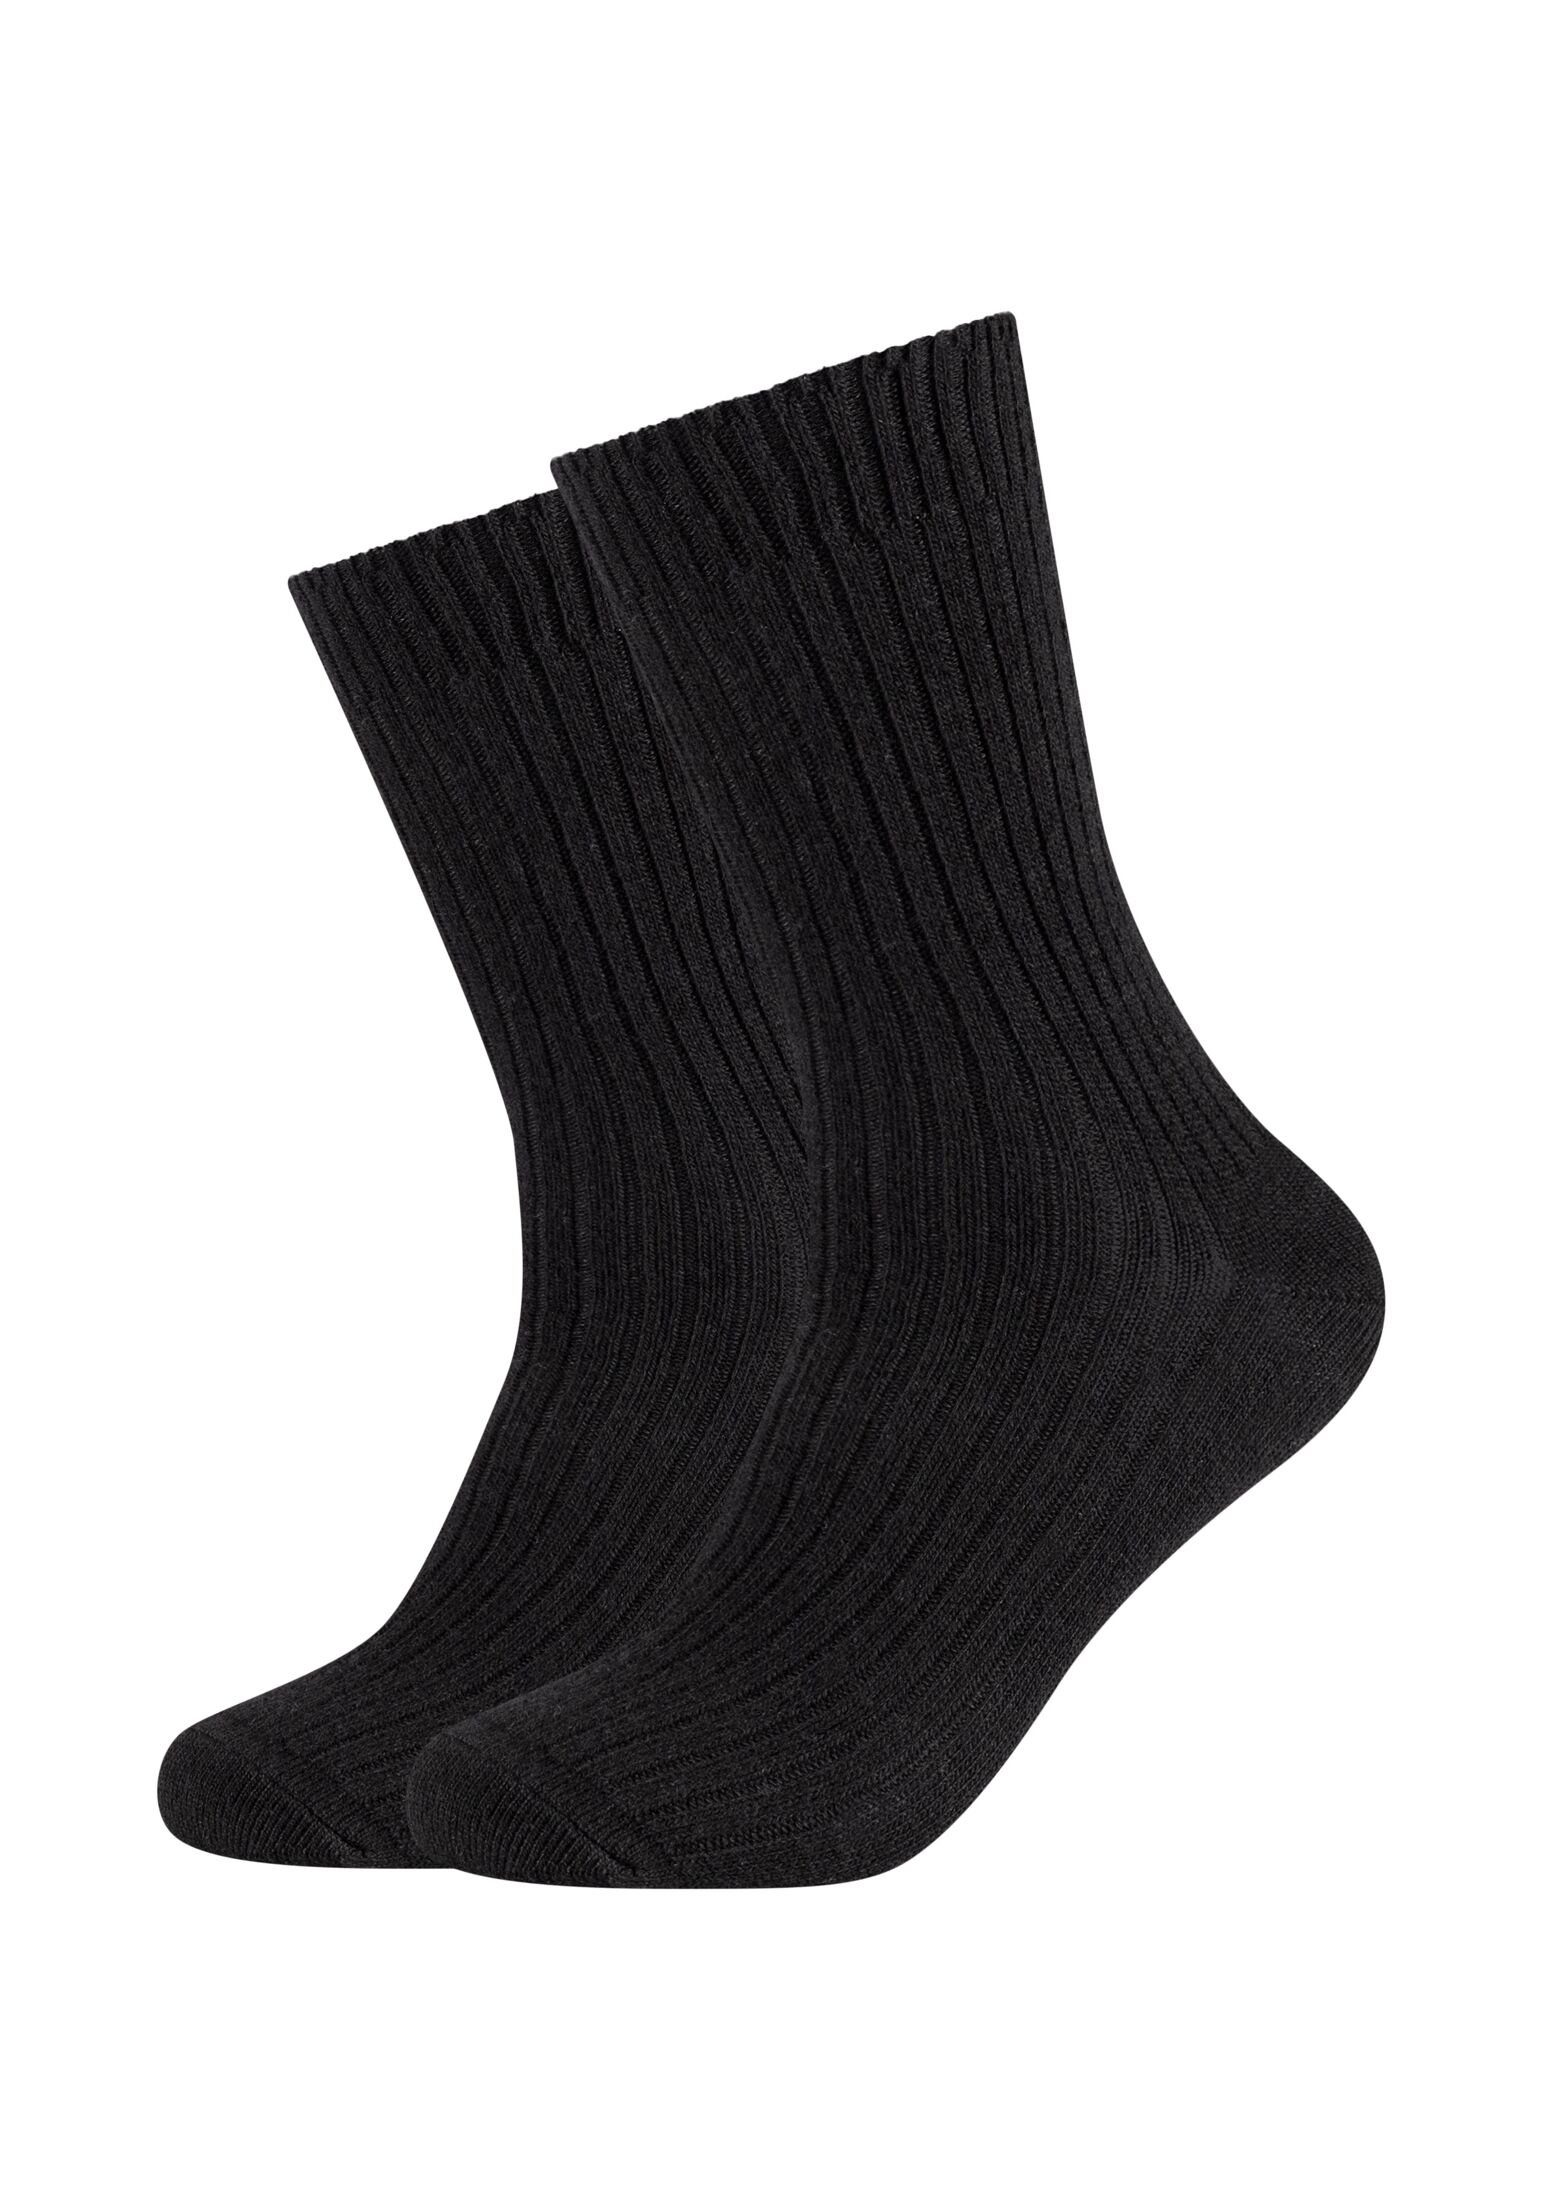 2er black Socken Socken s.Oliver Pack